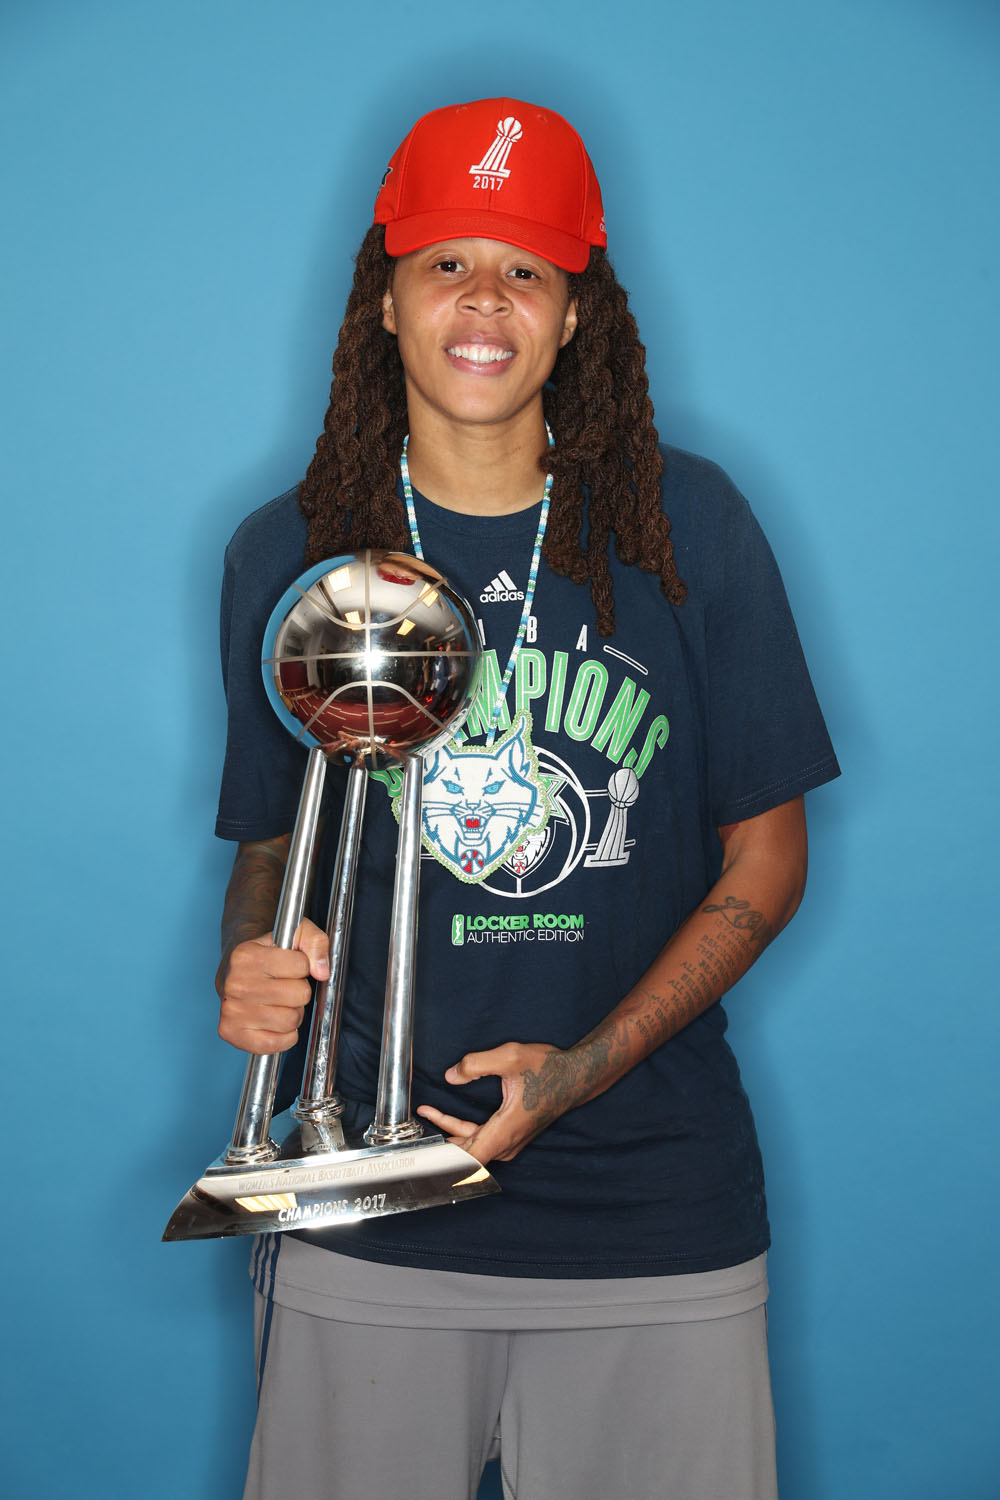 WNBA Finals G5 - Los Angeles Sparks v Minnesota Lynx